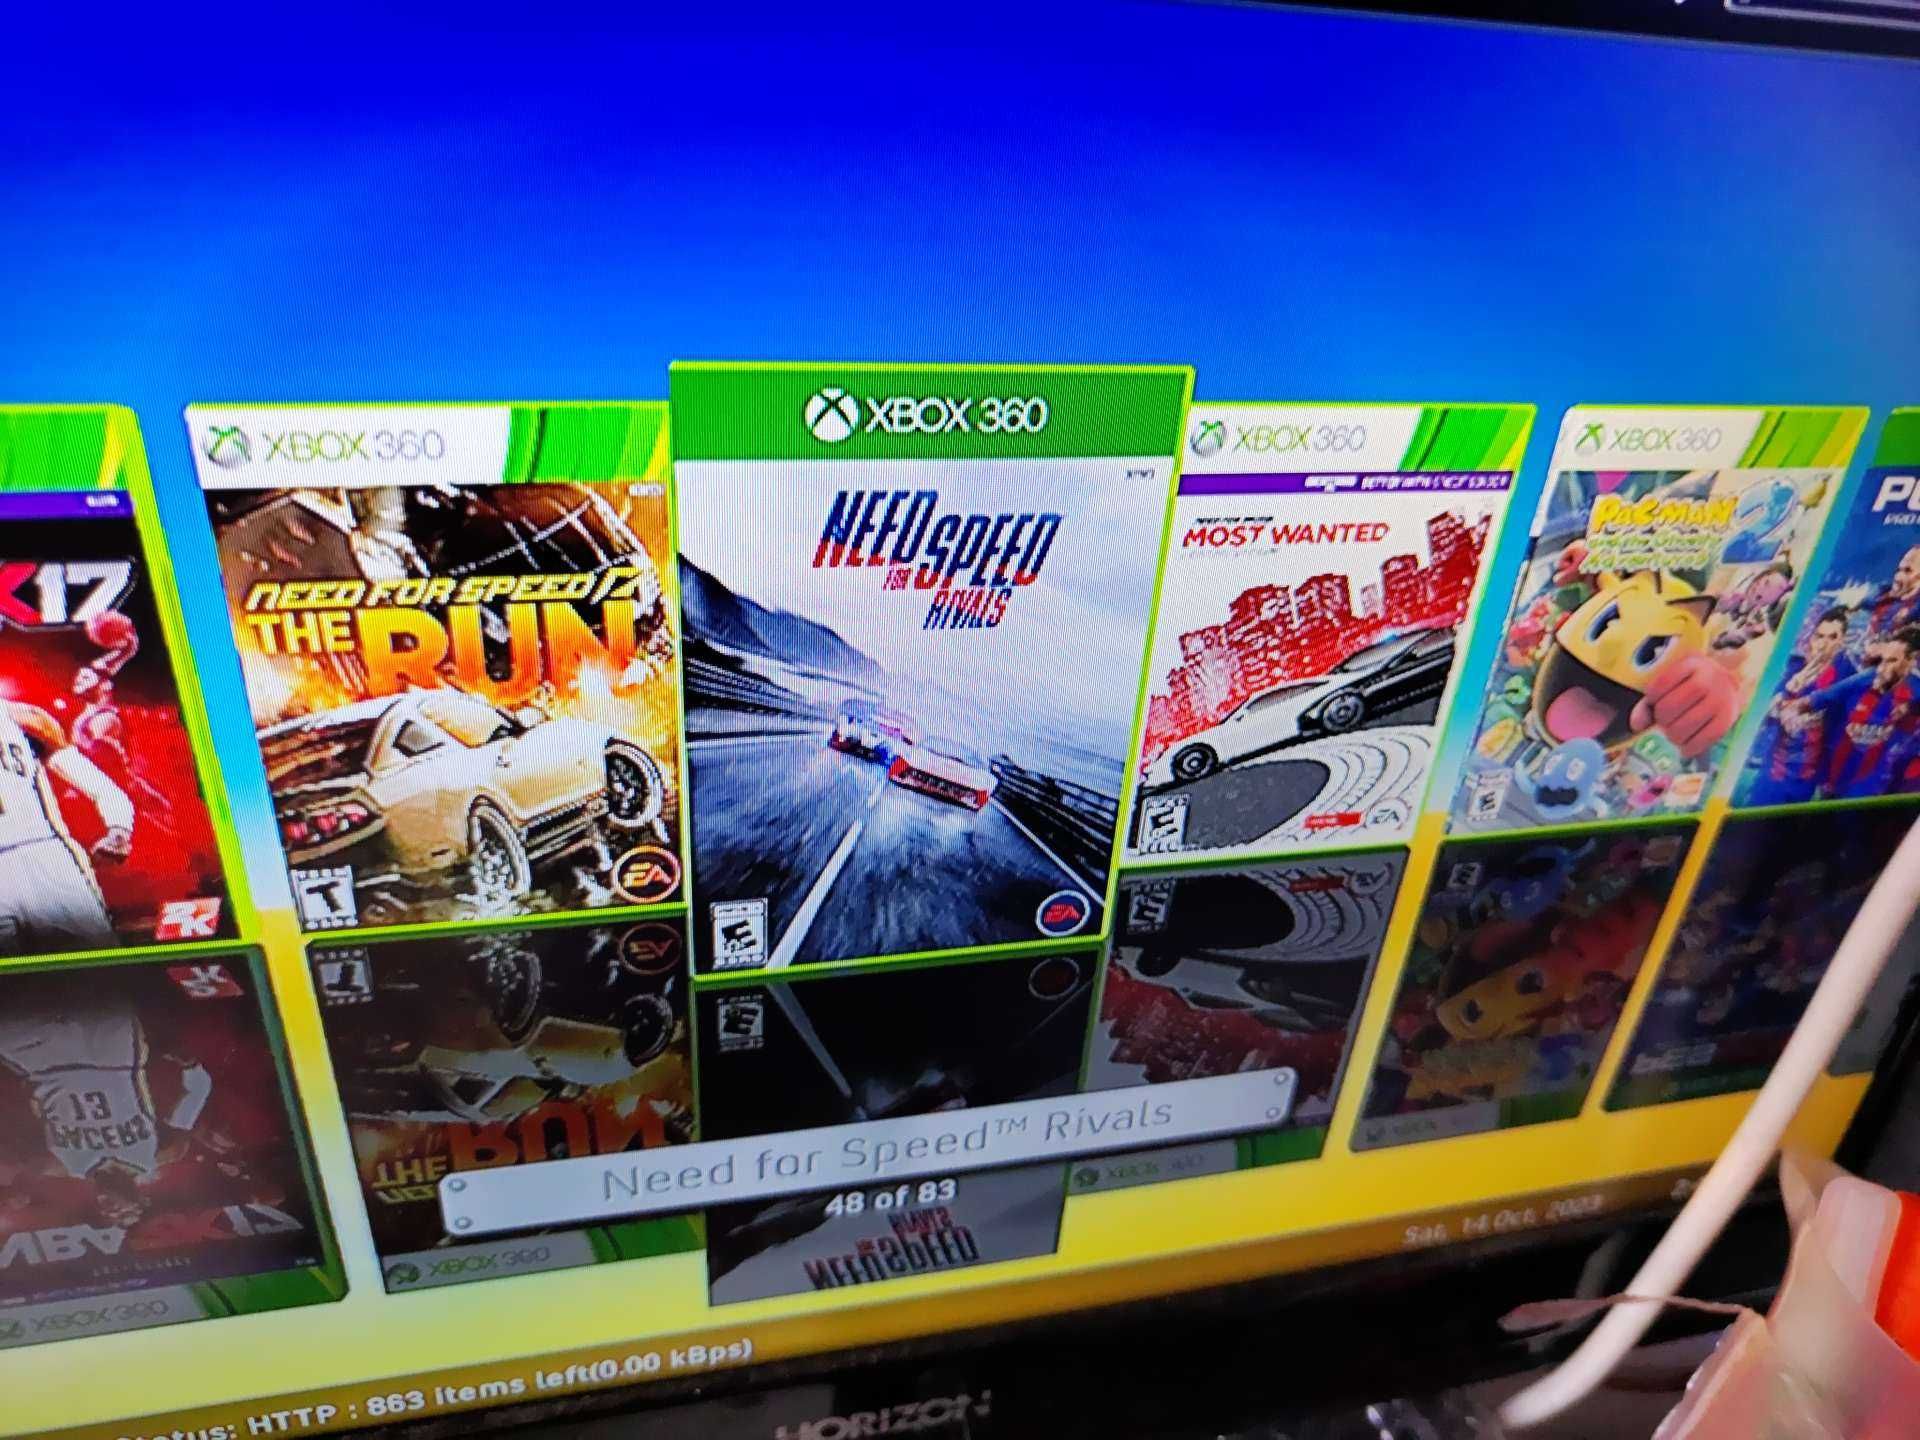 Xbox360, modat, 500gb, 83 jocuri, Fifa, Gta 5, Mk, Blur